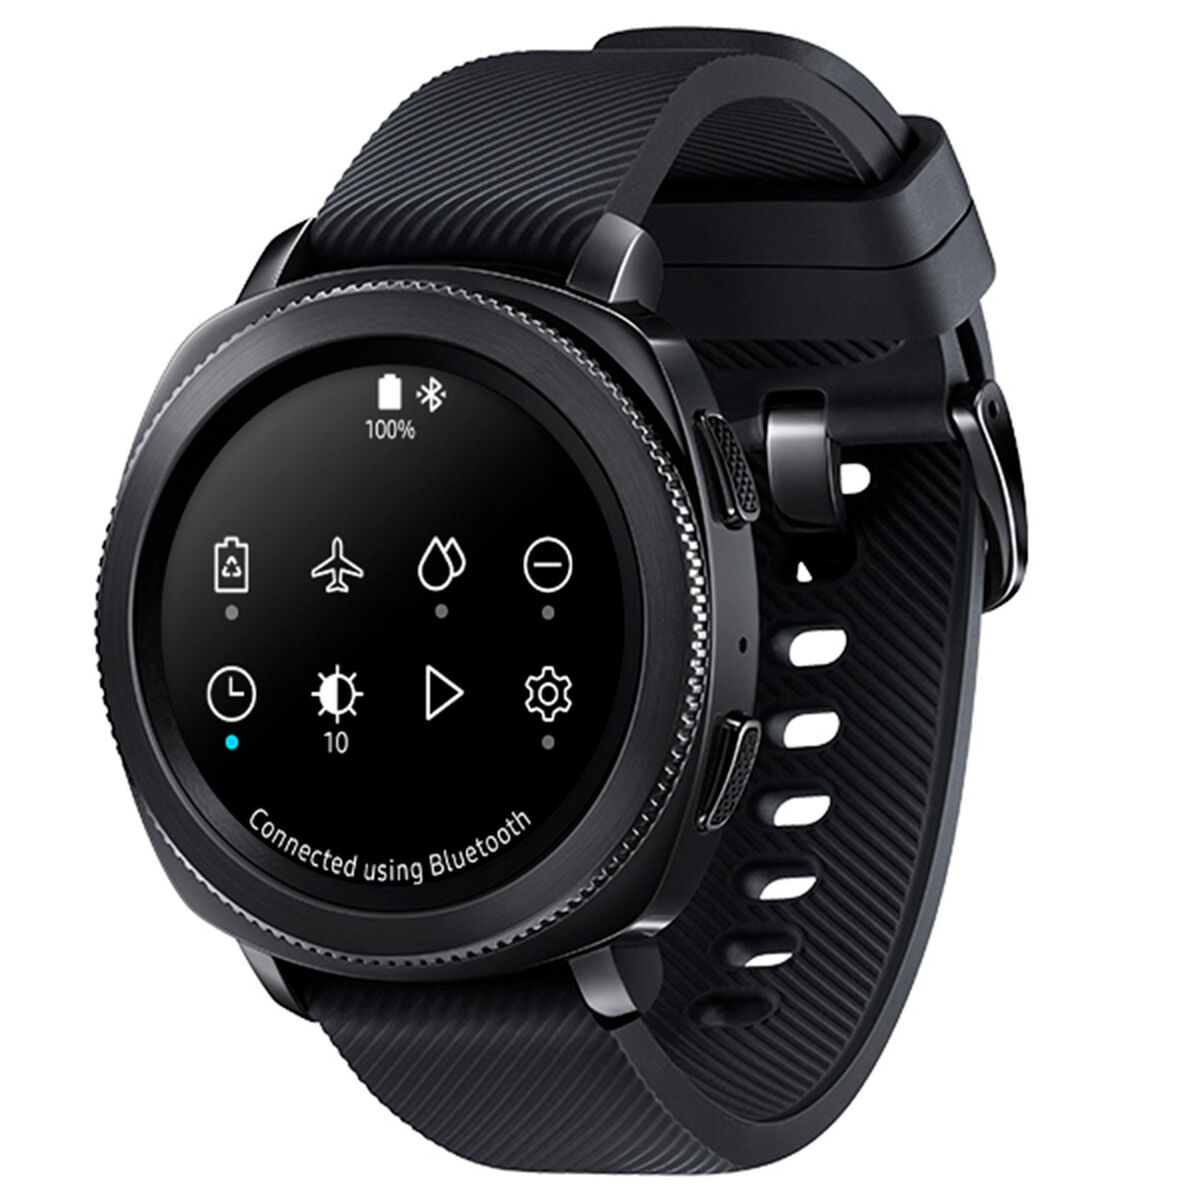 Smart Watch Gearsport Samsung  R600NZKACHO 1,2"